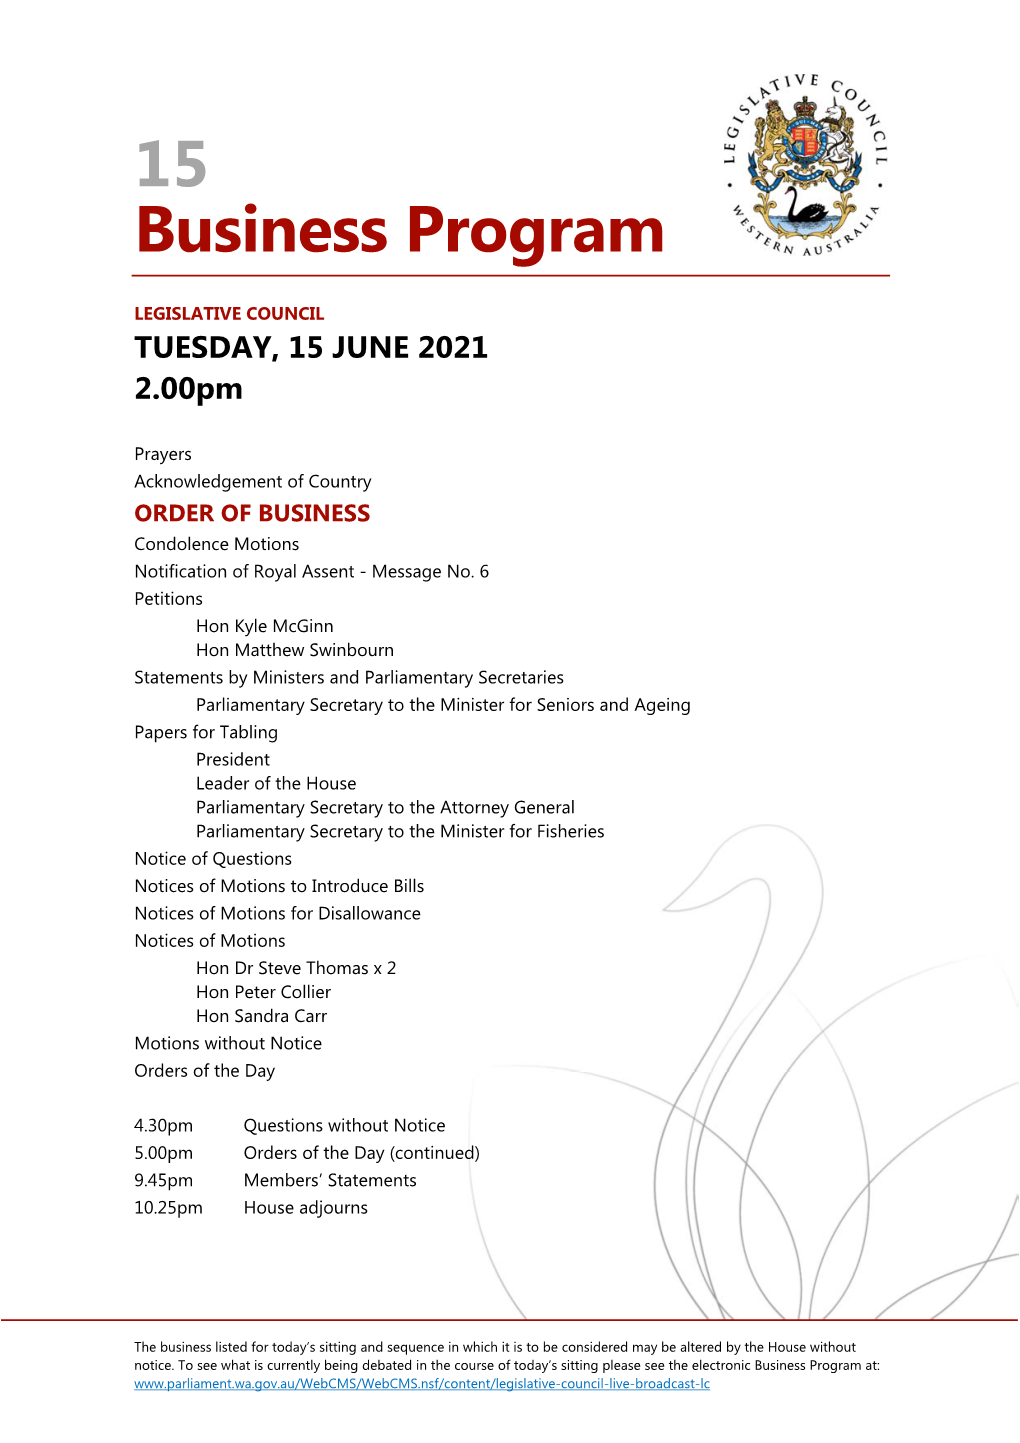 Business Program No 15